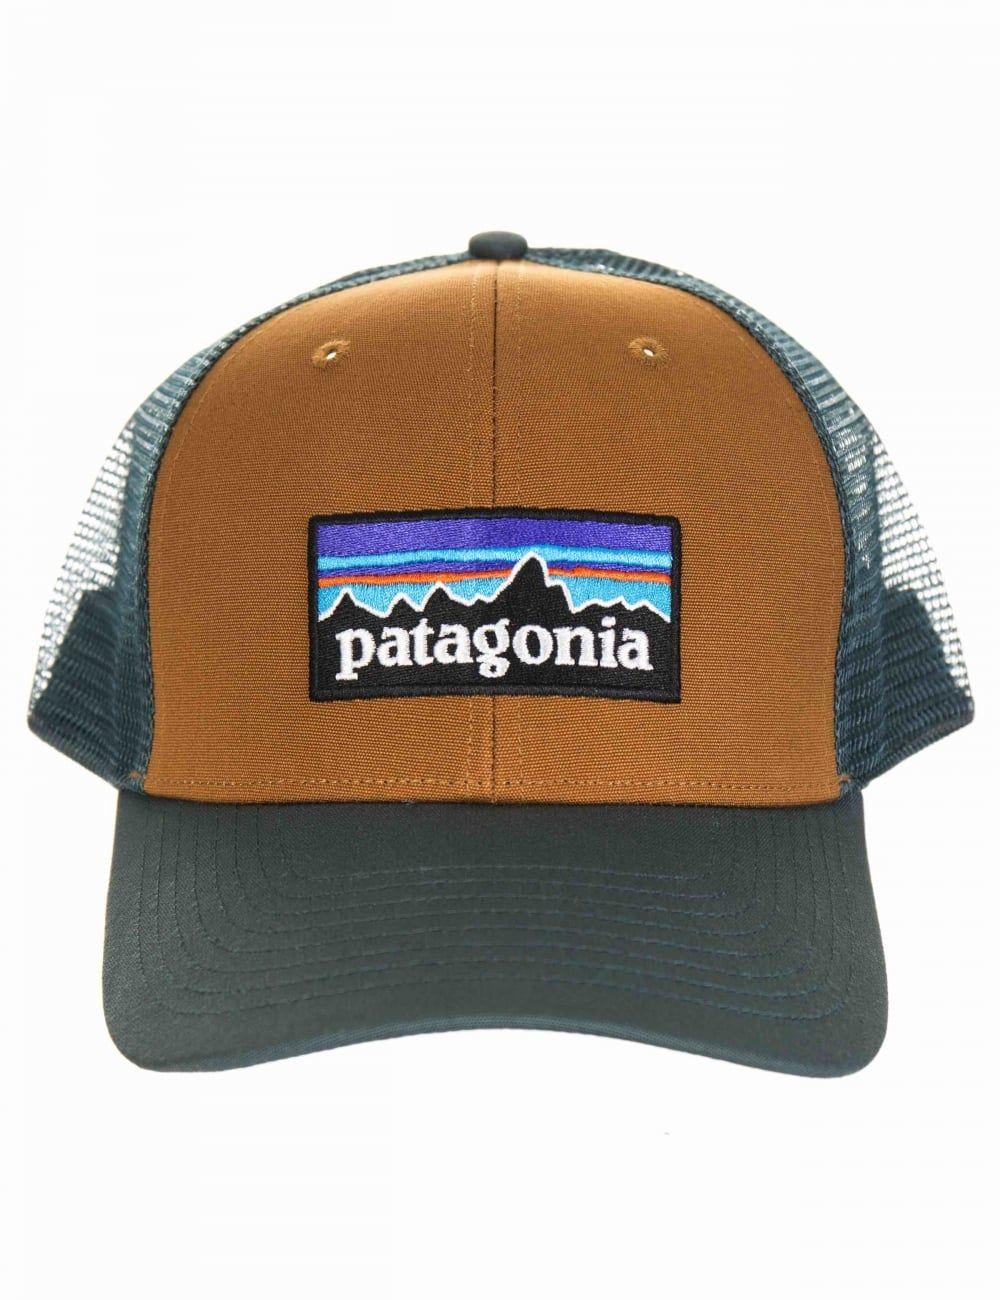 Patagonia Bear Logo - Patagonia P 6 Logo Trucker Hat Brown From IConsume UK